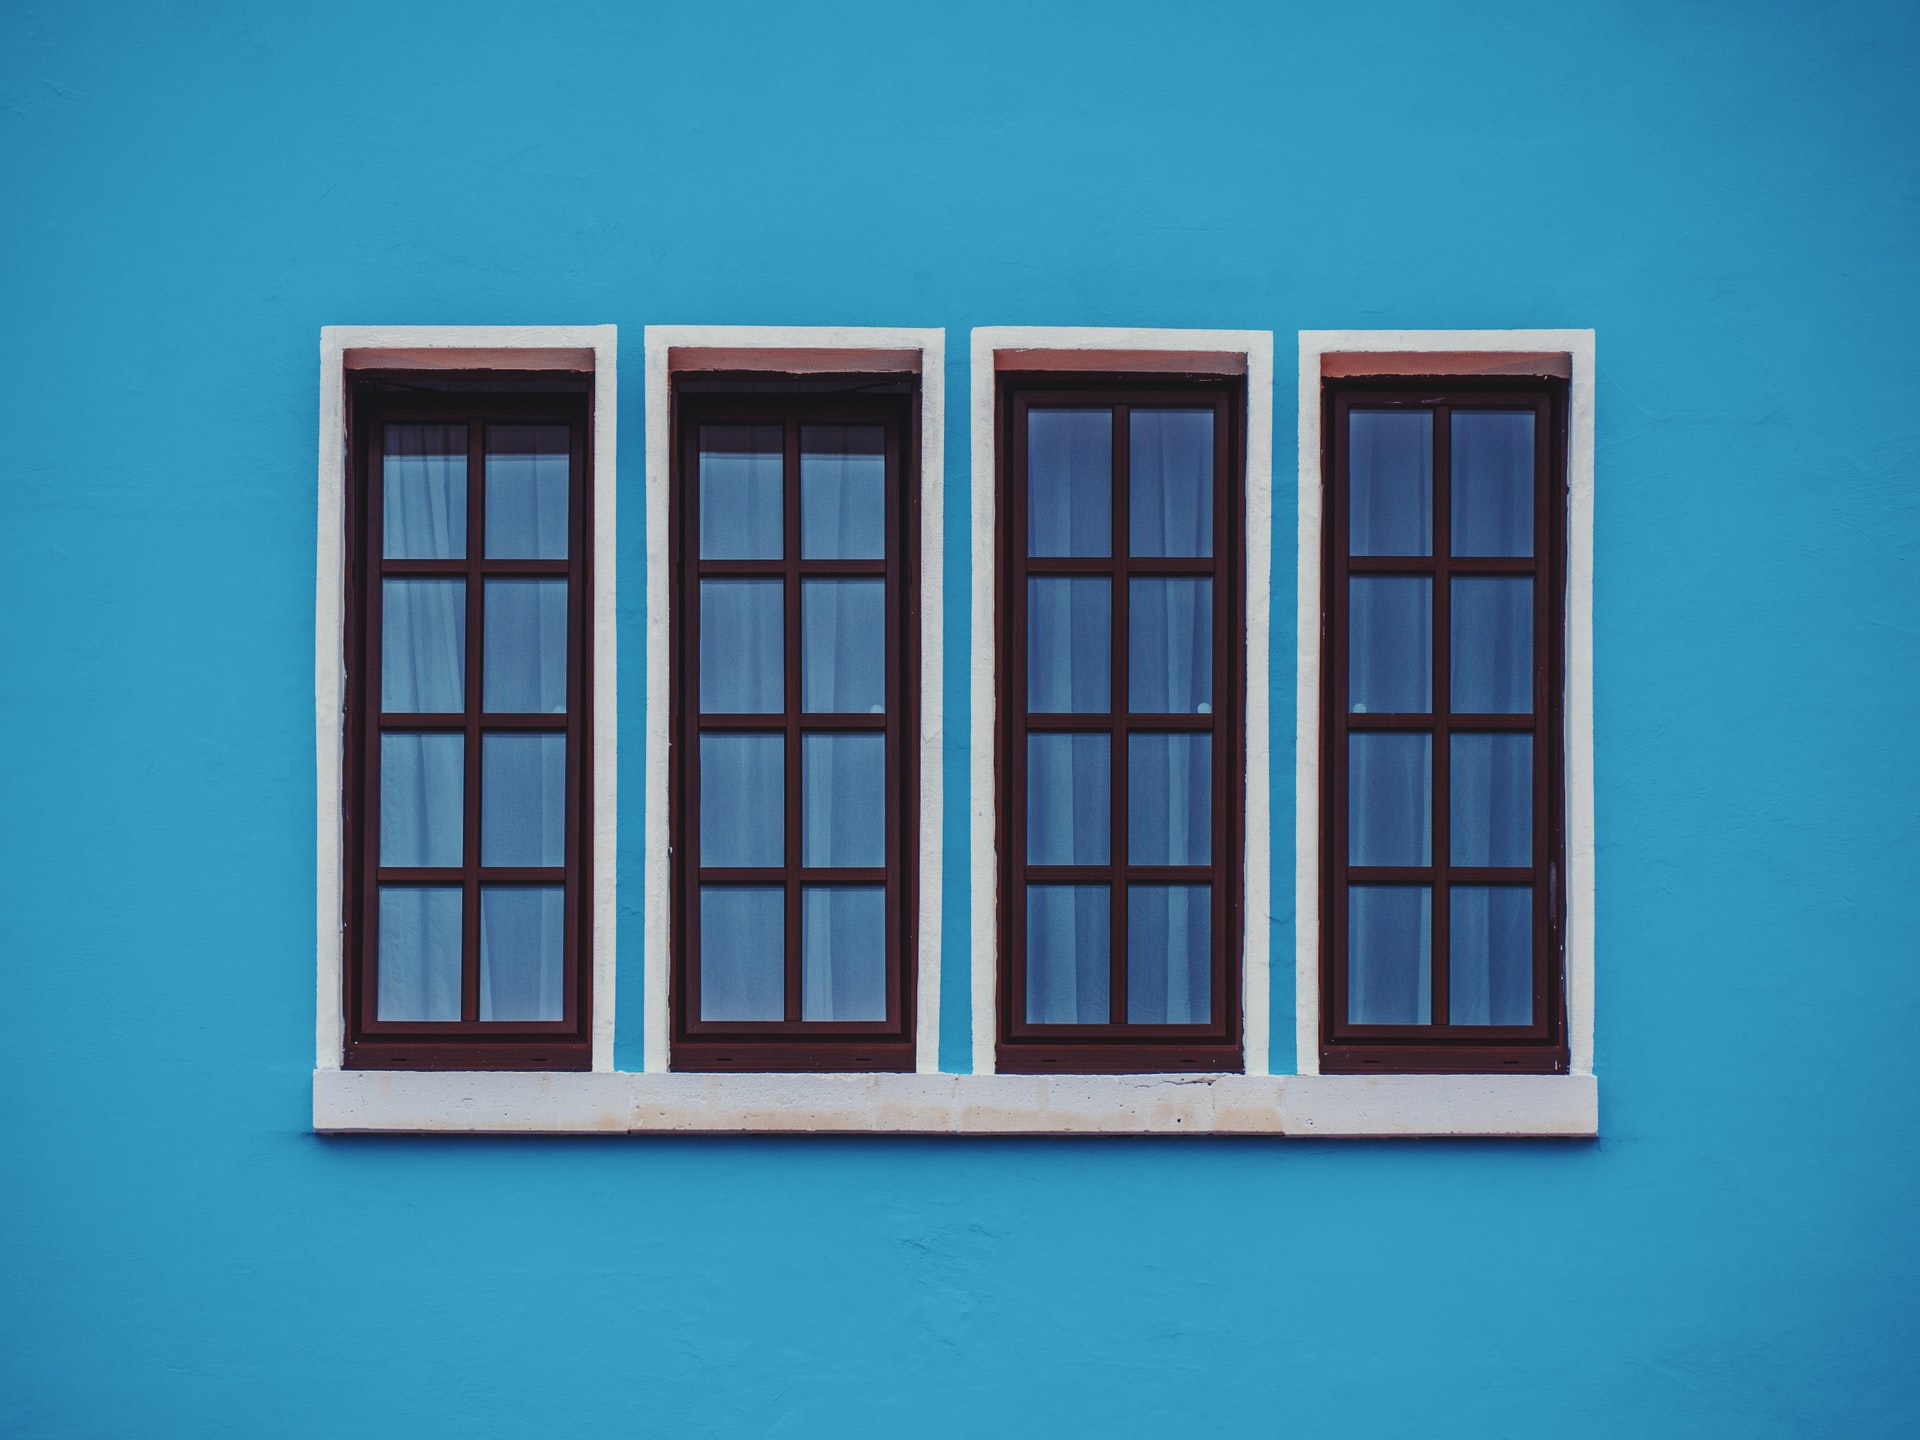 Photo of 4 windows by Daniel von Appen on Unsplash